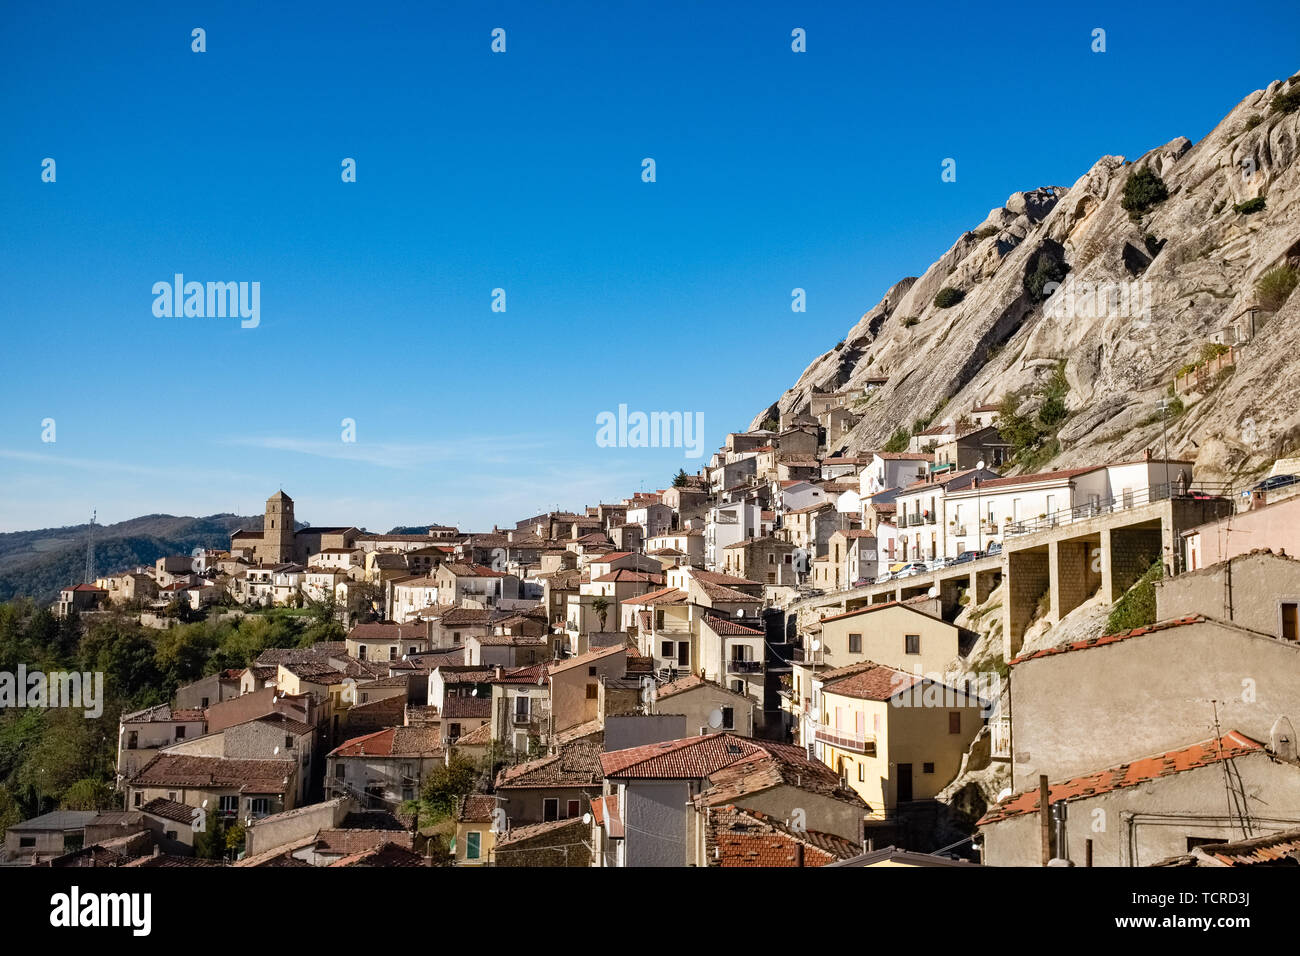 Ancien village de Pietrapertosa. Dolomites de la Basilicate montagnes Dolomiti Lucane. Région Basilicate, Italie Banque D'Images